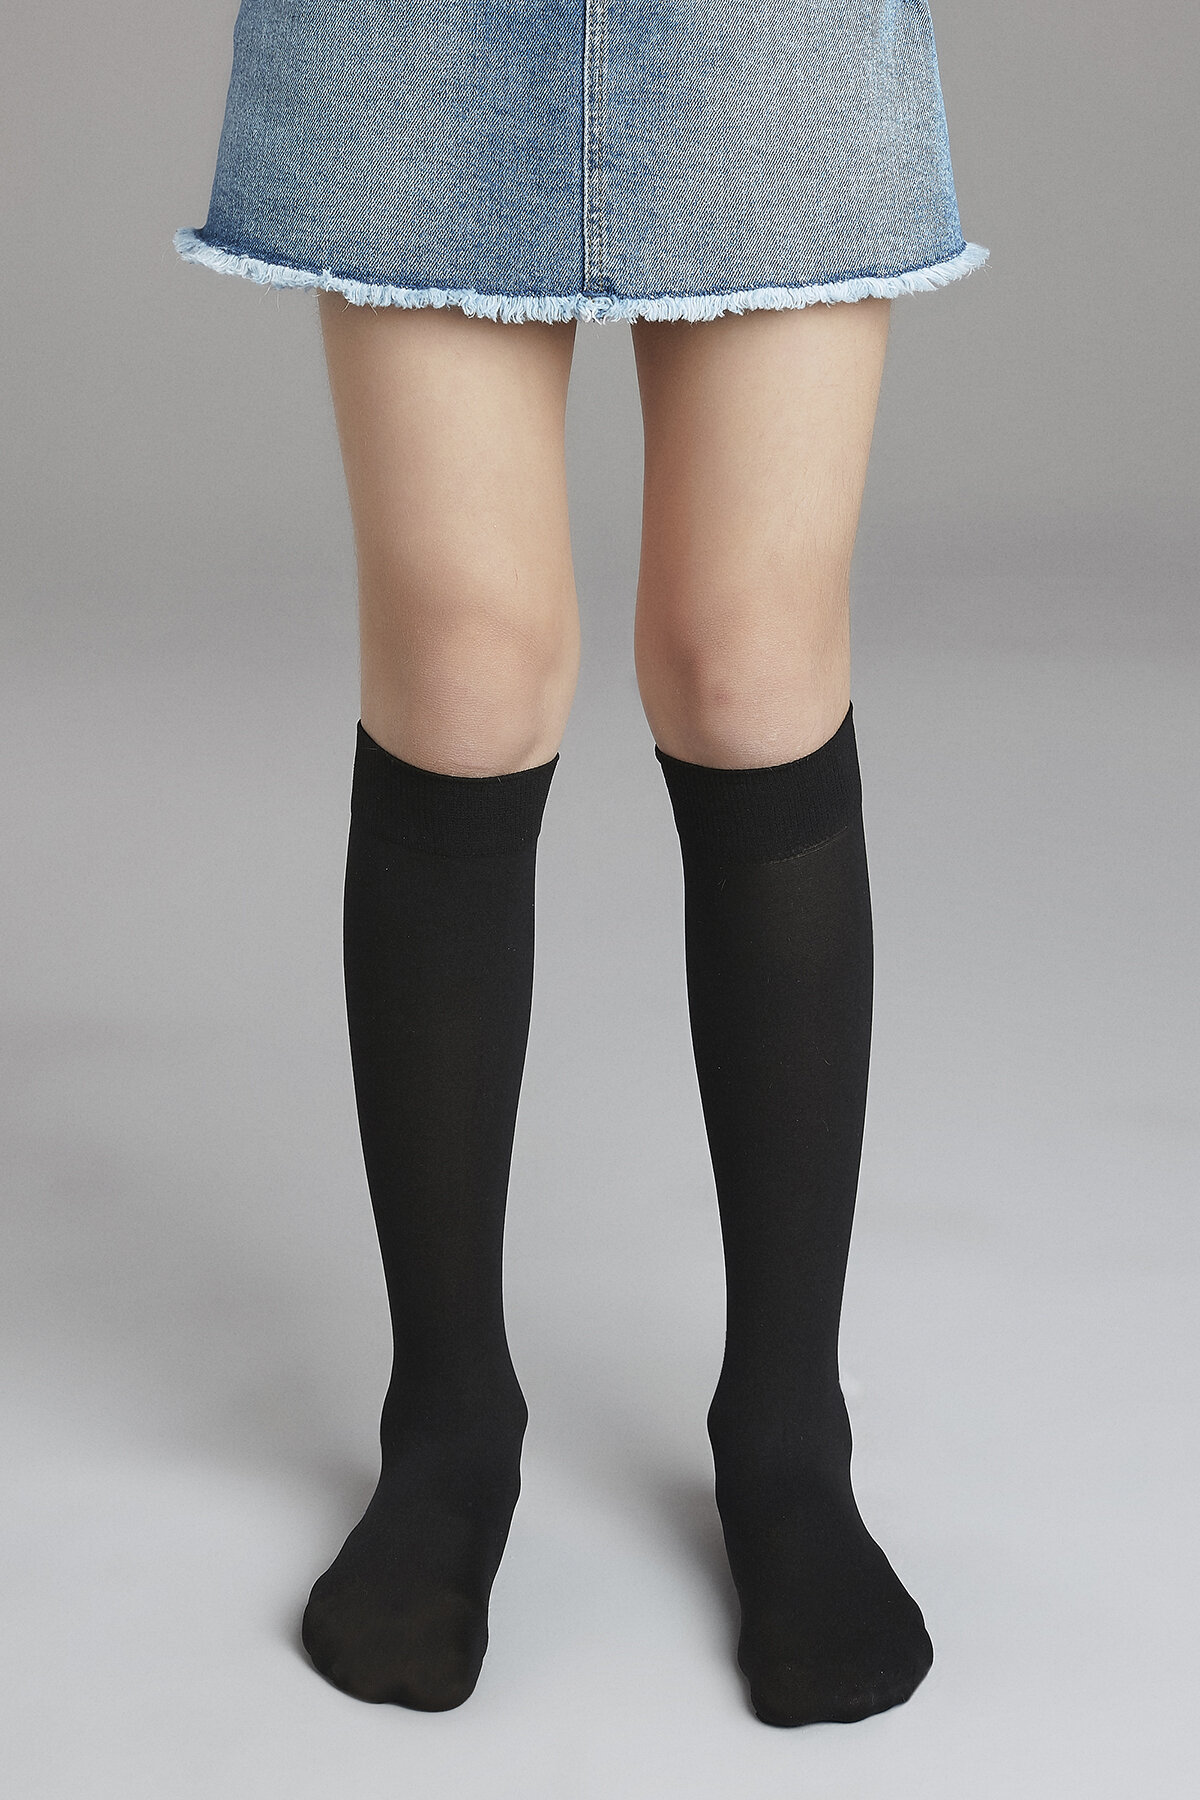 Penti Siyah Kız Çocuk Mikro 40 Pantolon Çorabı. 1